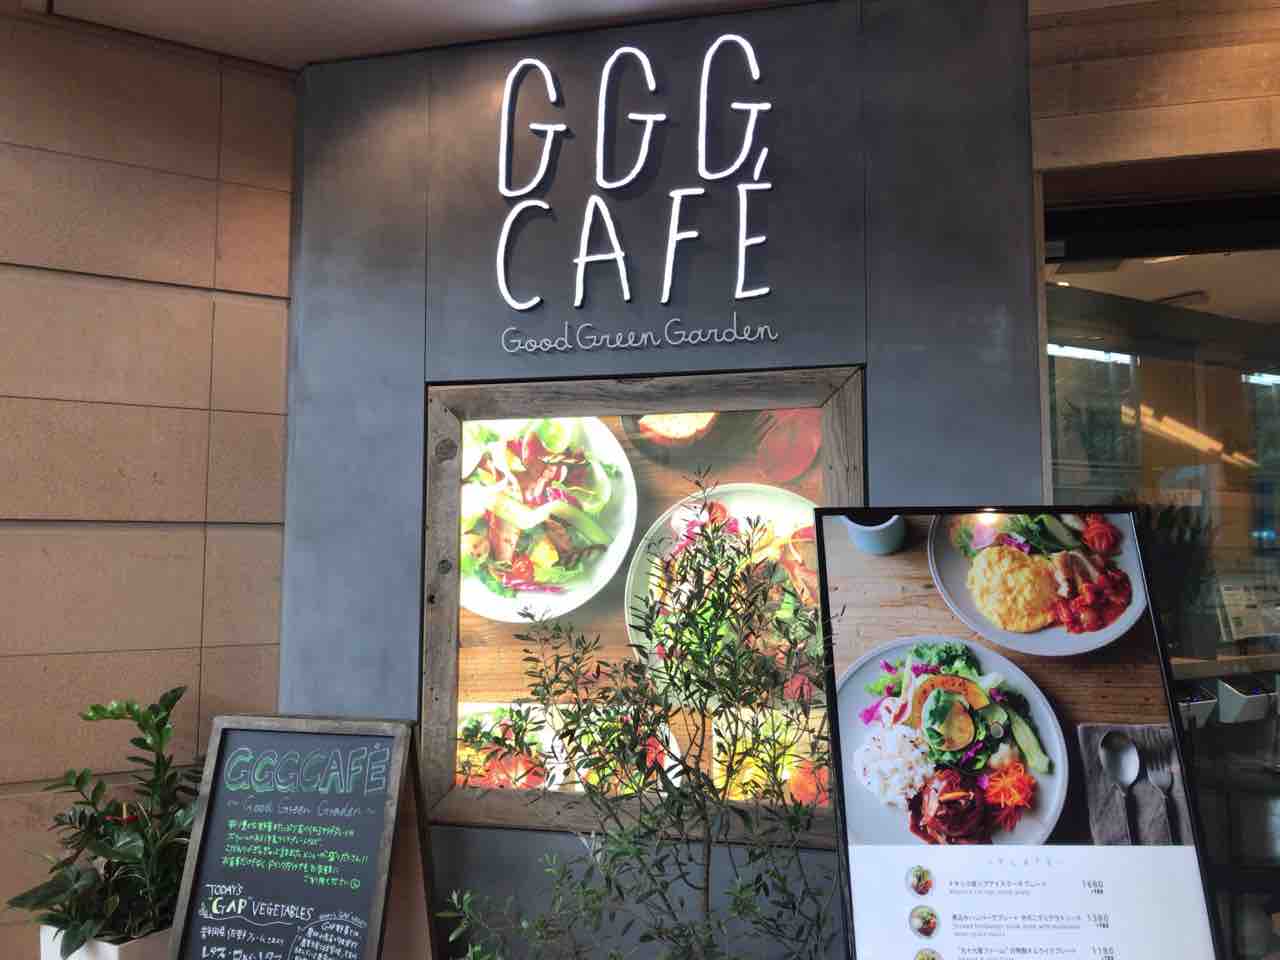 羽田空港第２ターミナル Ggg Cafe Good Green Garden 趣味の為に生きて行く